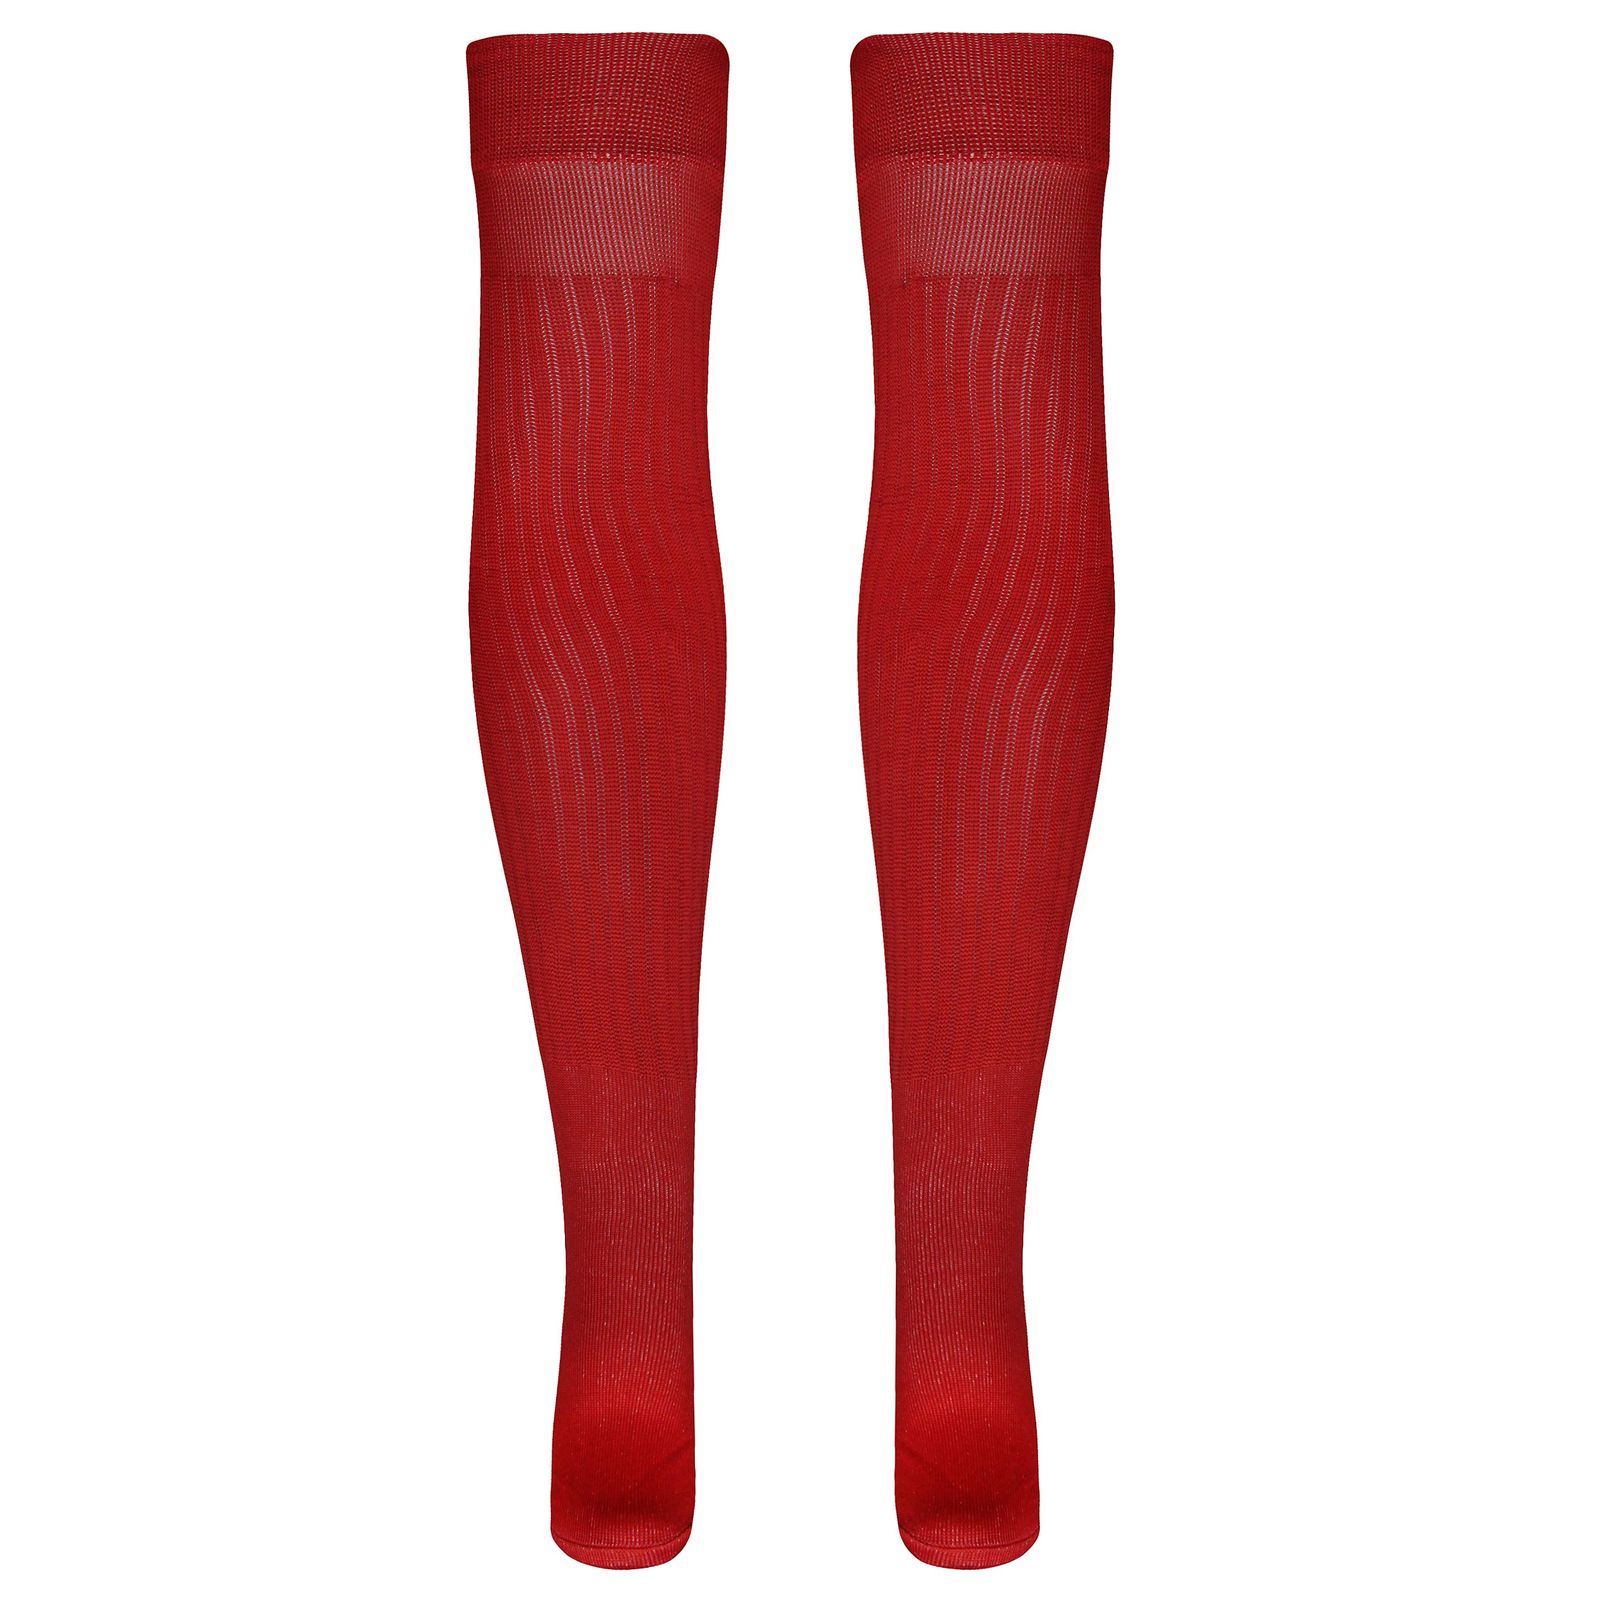 جوراب ورزشی ساق بلند مردانه ماییلدا مدل 4185 رنگ قرمز -  - 2